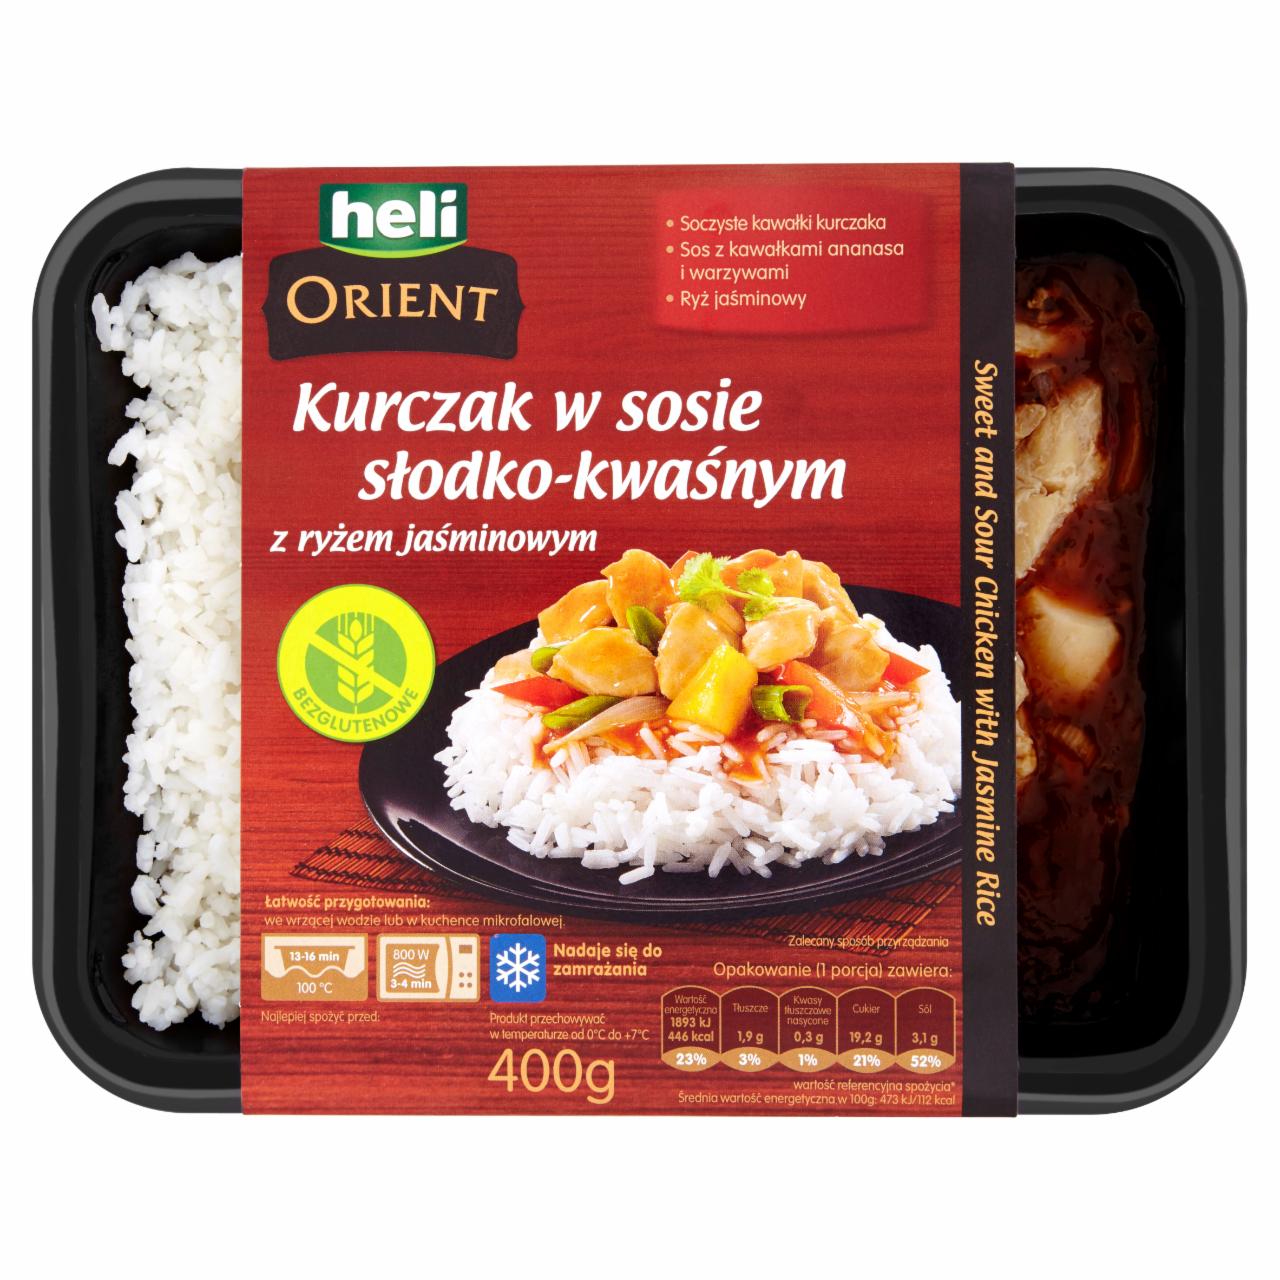 Zdjęcia - Heli Orient Kurczak w sosie słodko-kwaśnym z ryżem jaśminowym 400 g